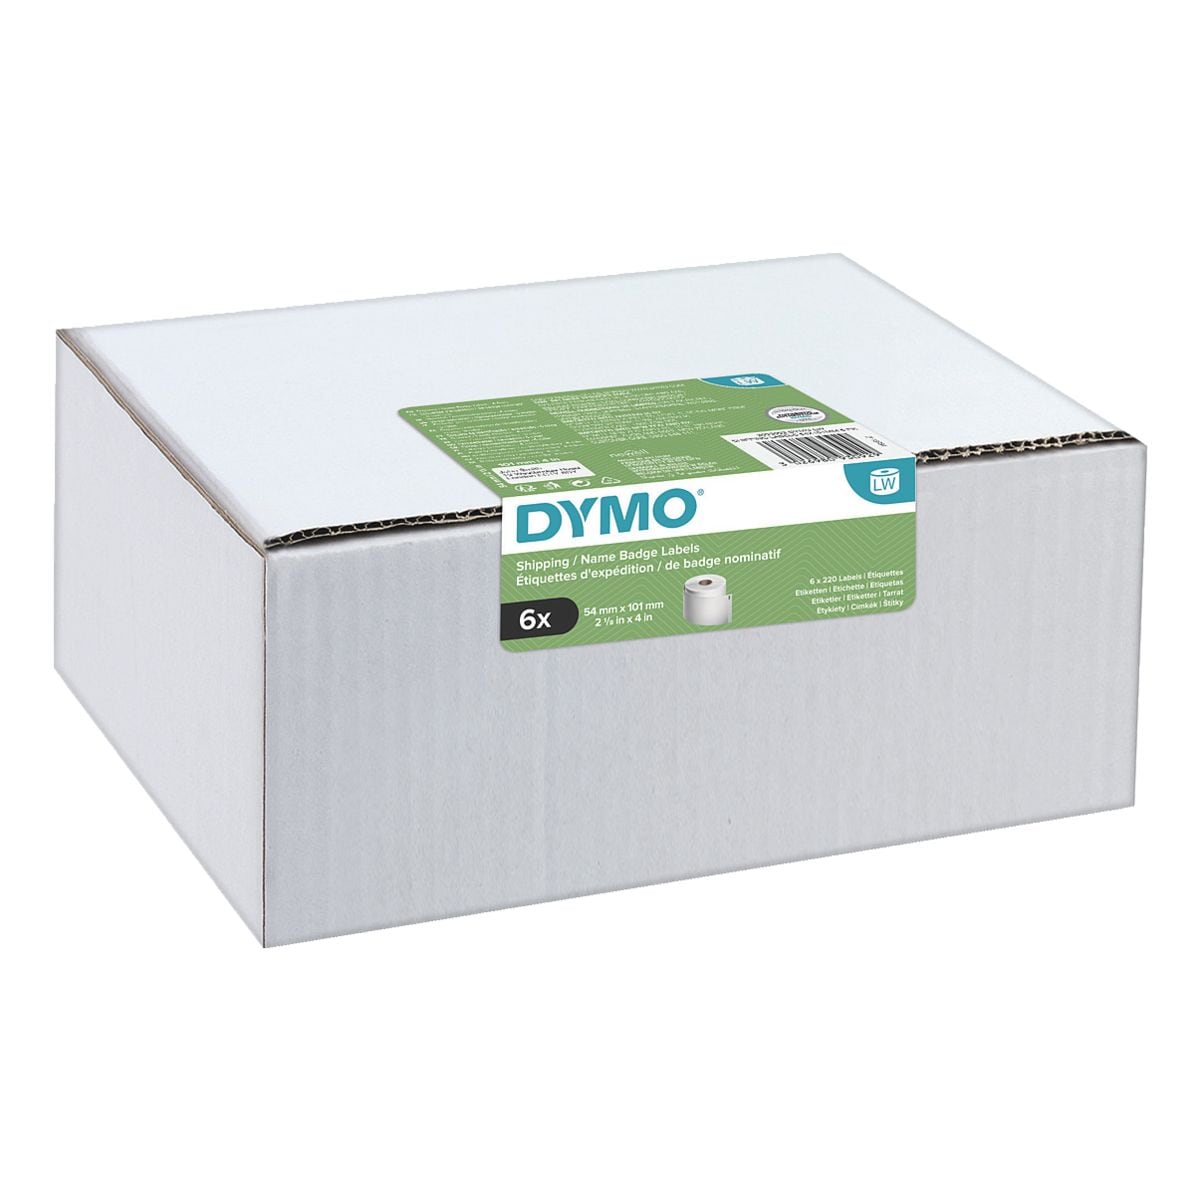 DYMO Pak met 6 LabelWriter papieren etiketten S0722430 voordeelpakket